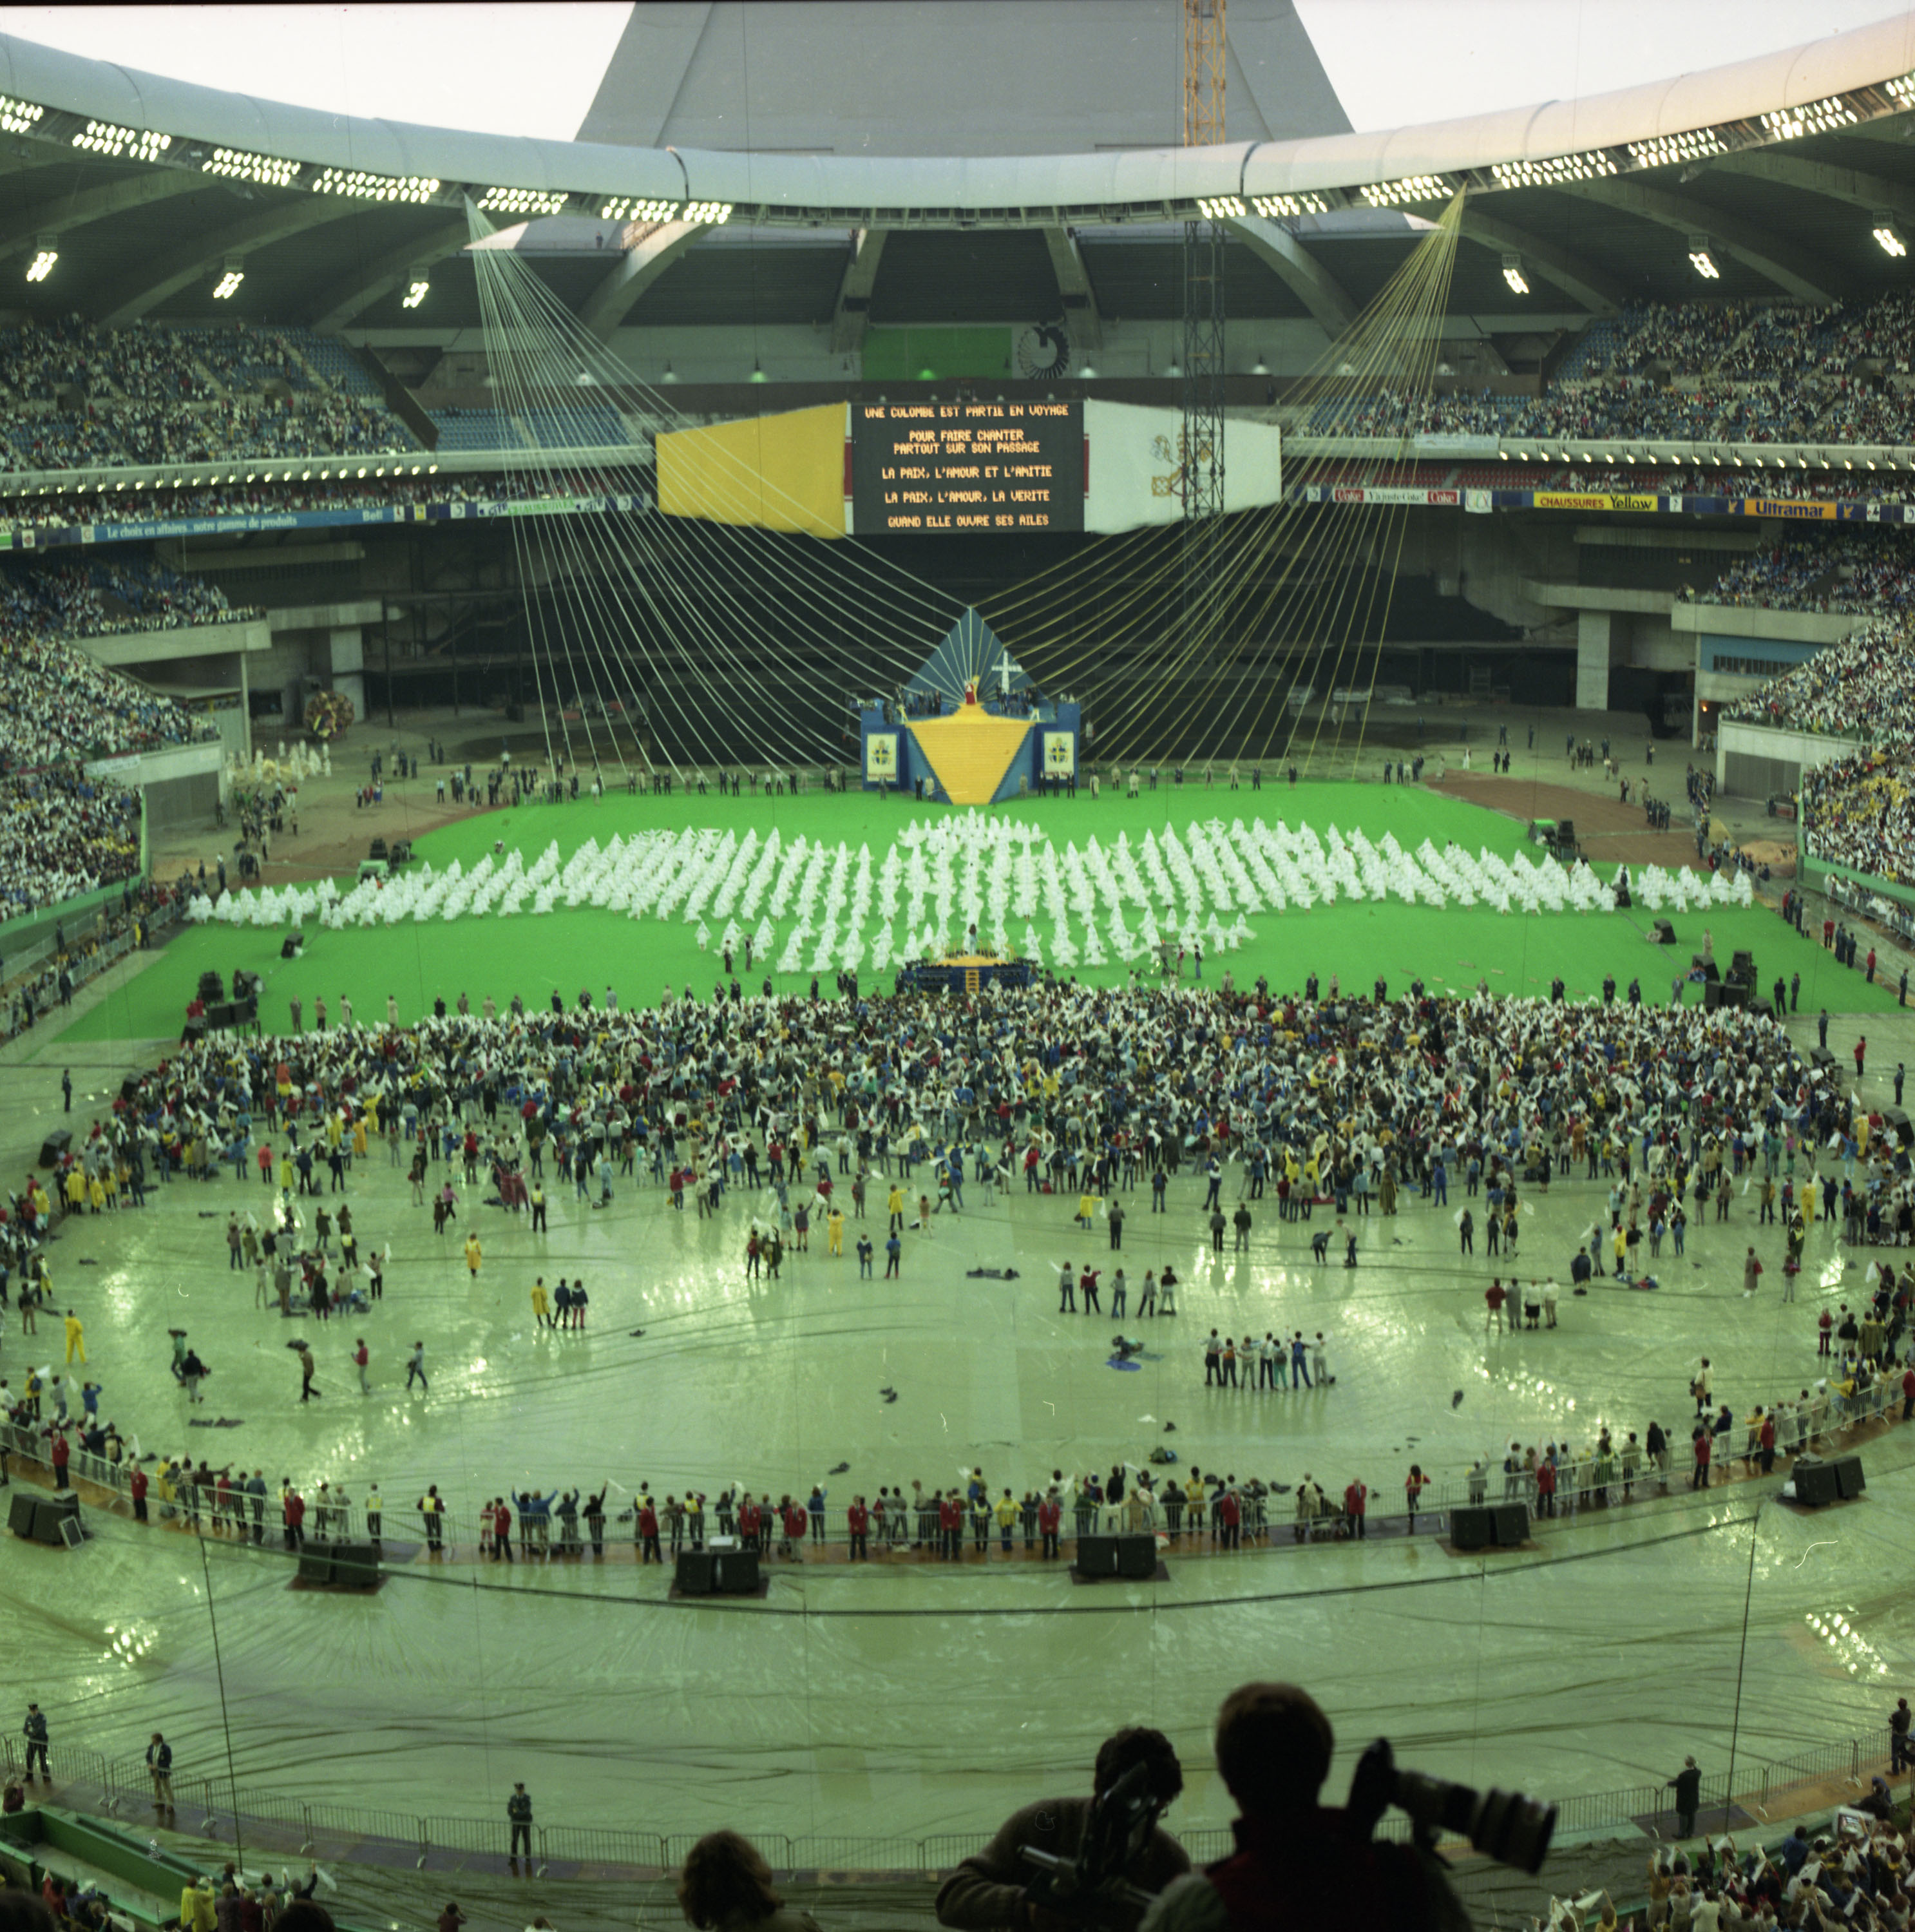 Cérémonie au Stade olympique lors de la venue du pape.